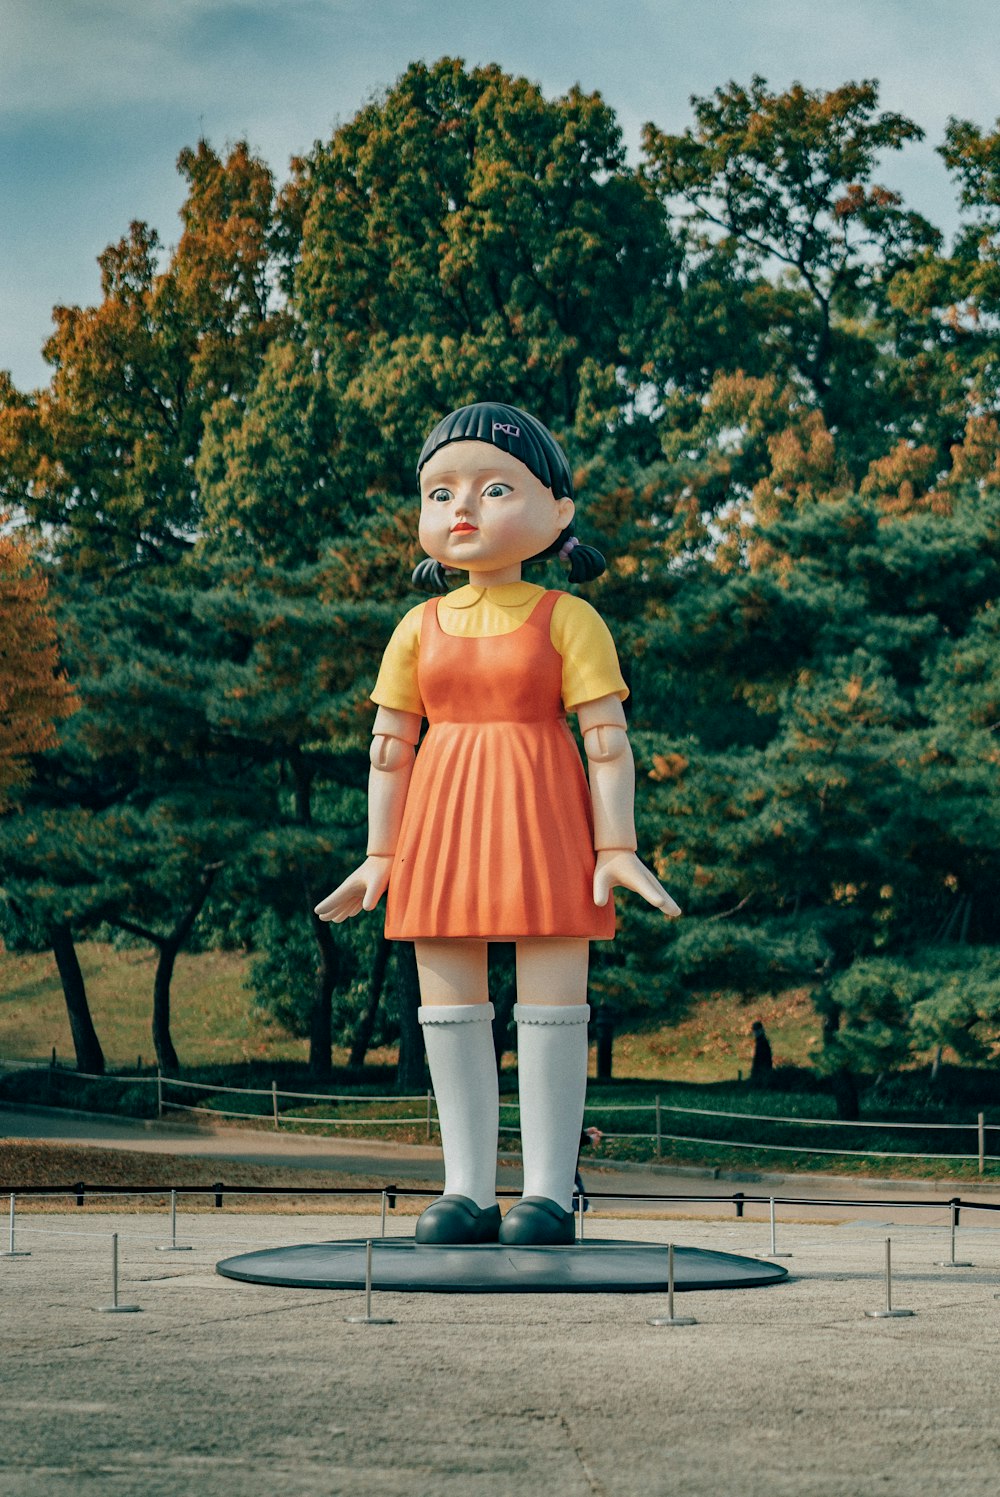 Eine Statue eines Mädchens in einem orangefarbenen Kleid